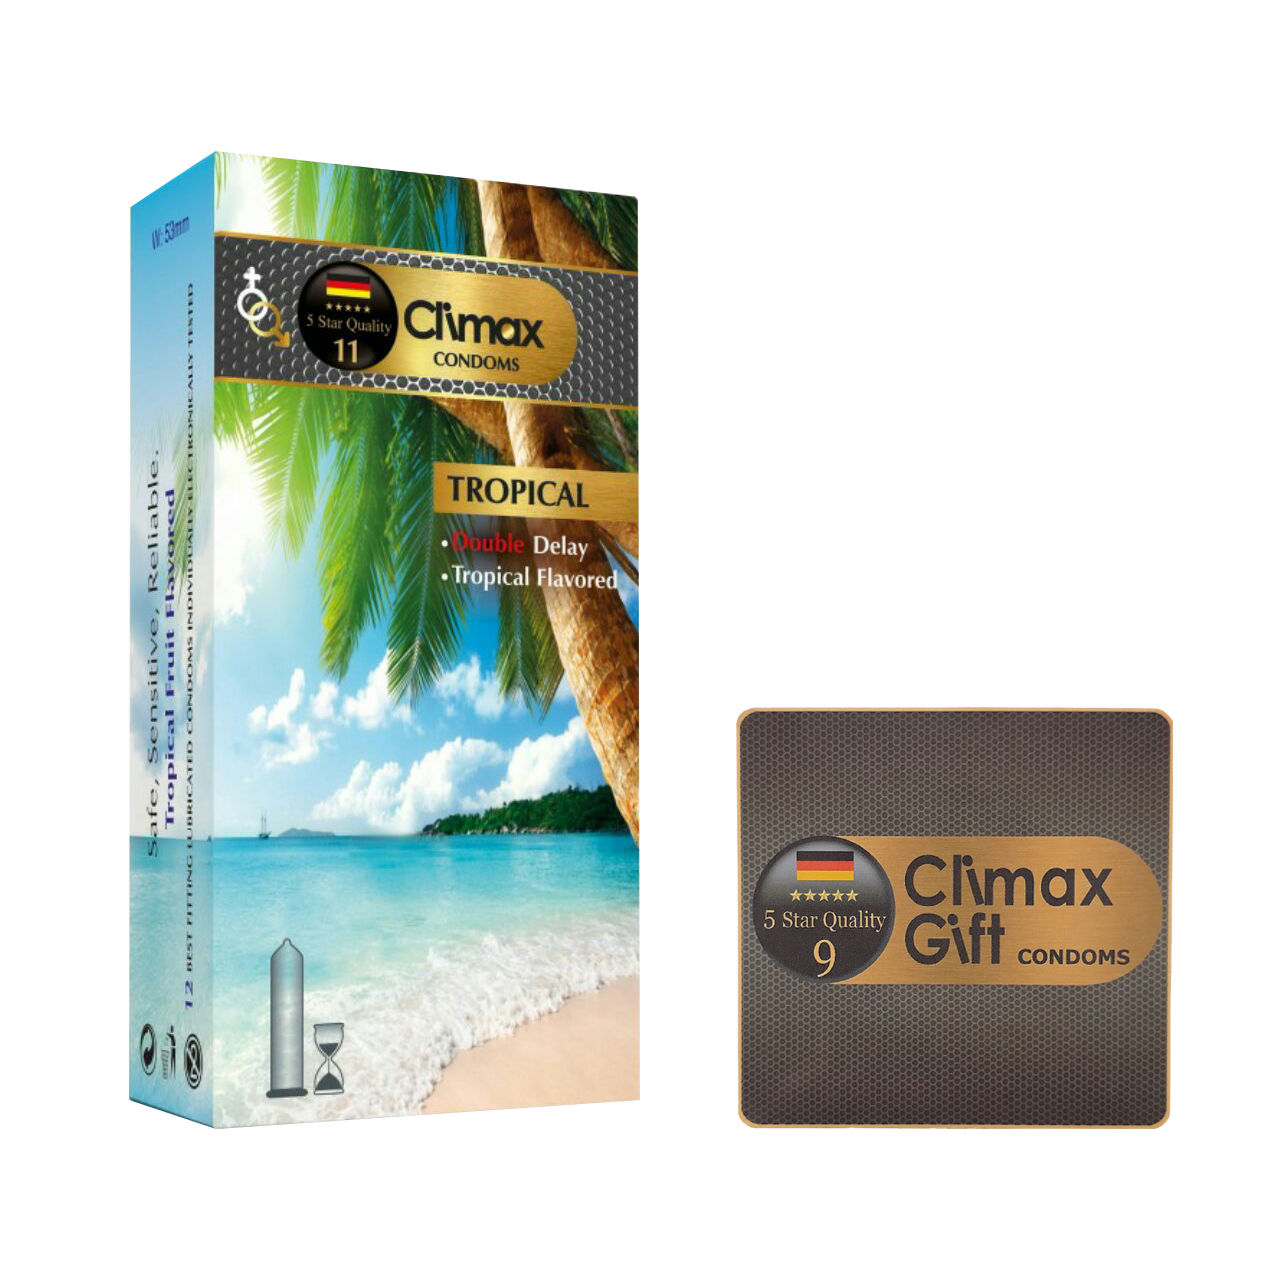 کاندوم کلایمکس مدل Tropical بسته 12 عددی به همراه کاندوم مدل Gift